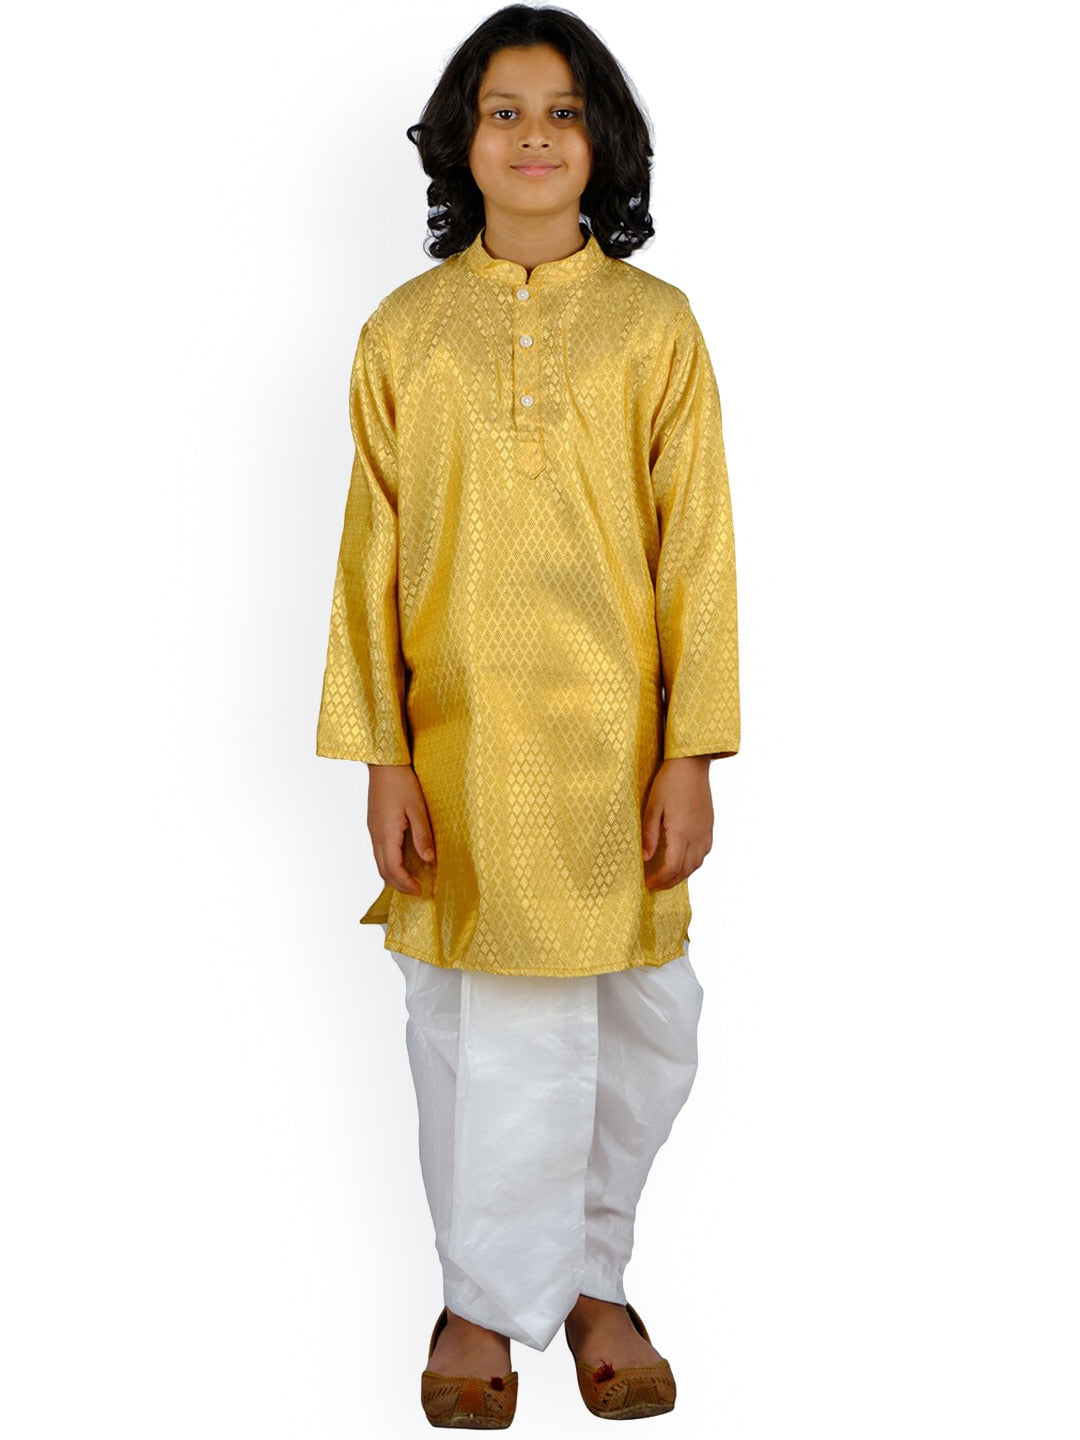 Sethukrishna Boys Gold-Toned Kurta with White Dhoti Pant - Distacart